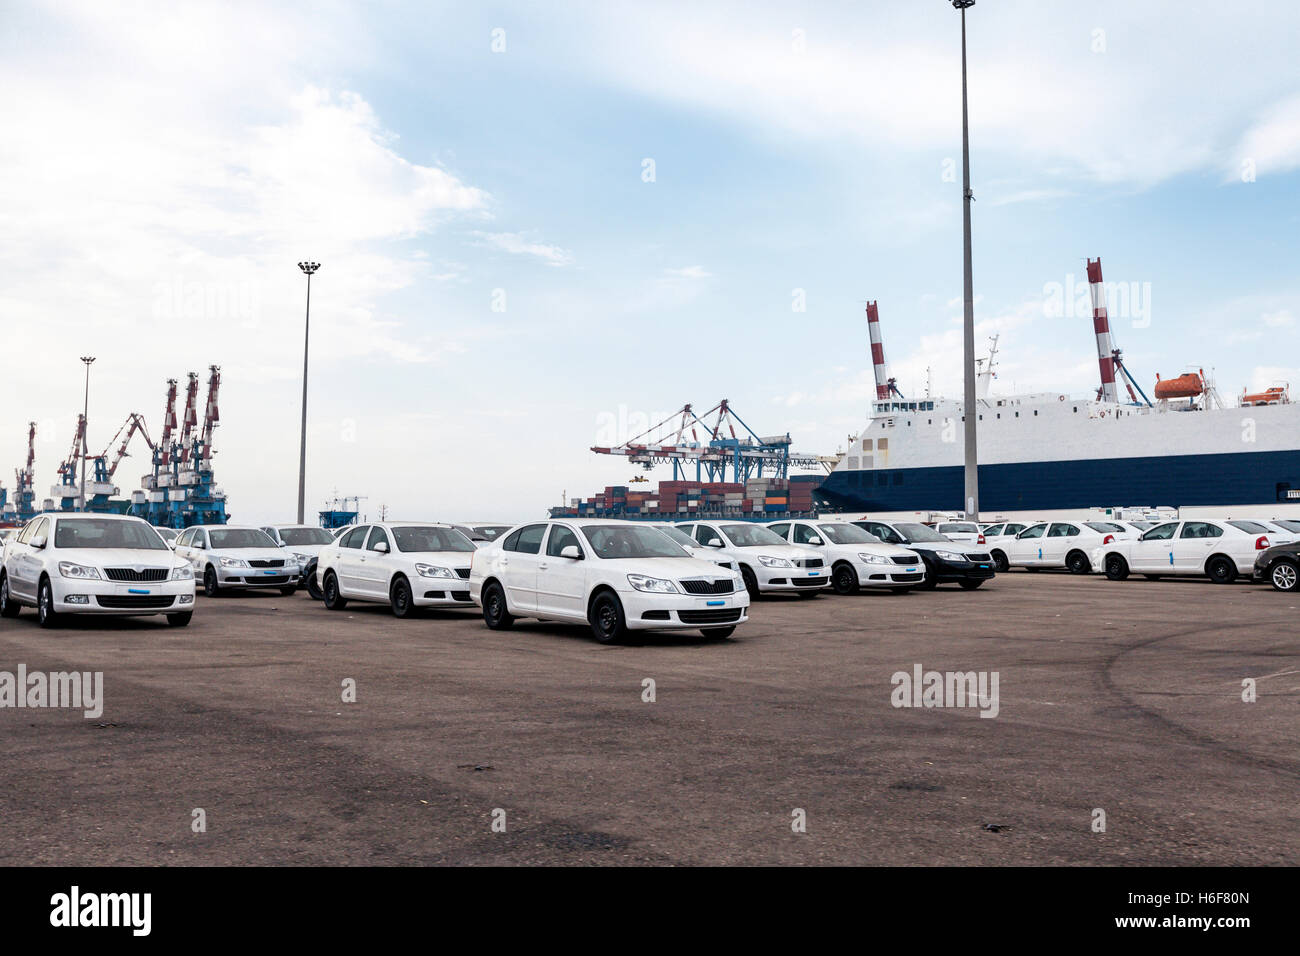 Spazio parcheggio pieno con nuove vetture che era appena stato scaricato dalla macchina freighter al loro porto di arrivo. Foto Stock